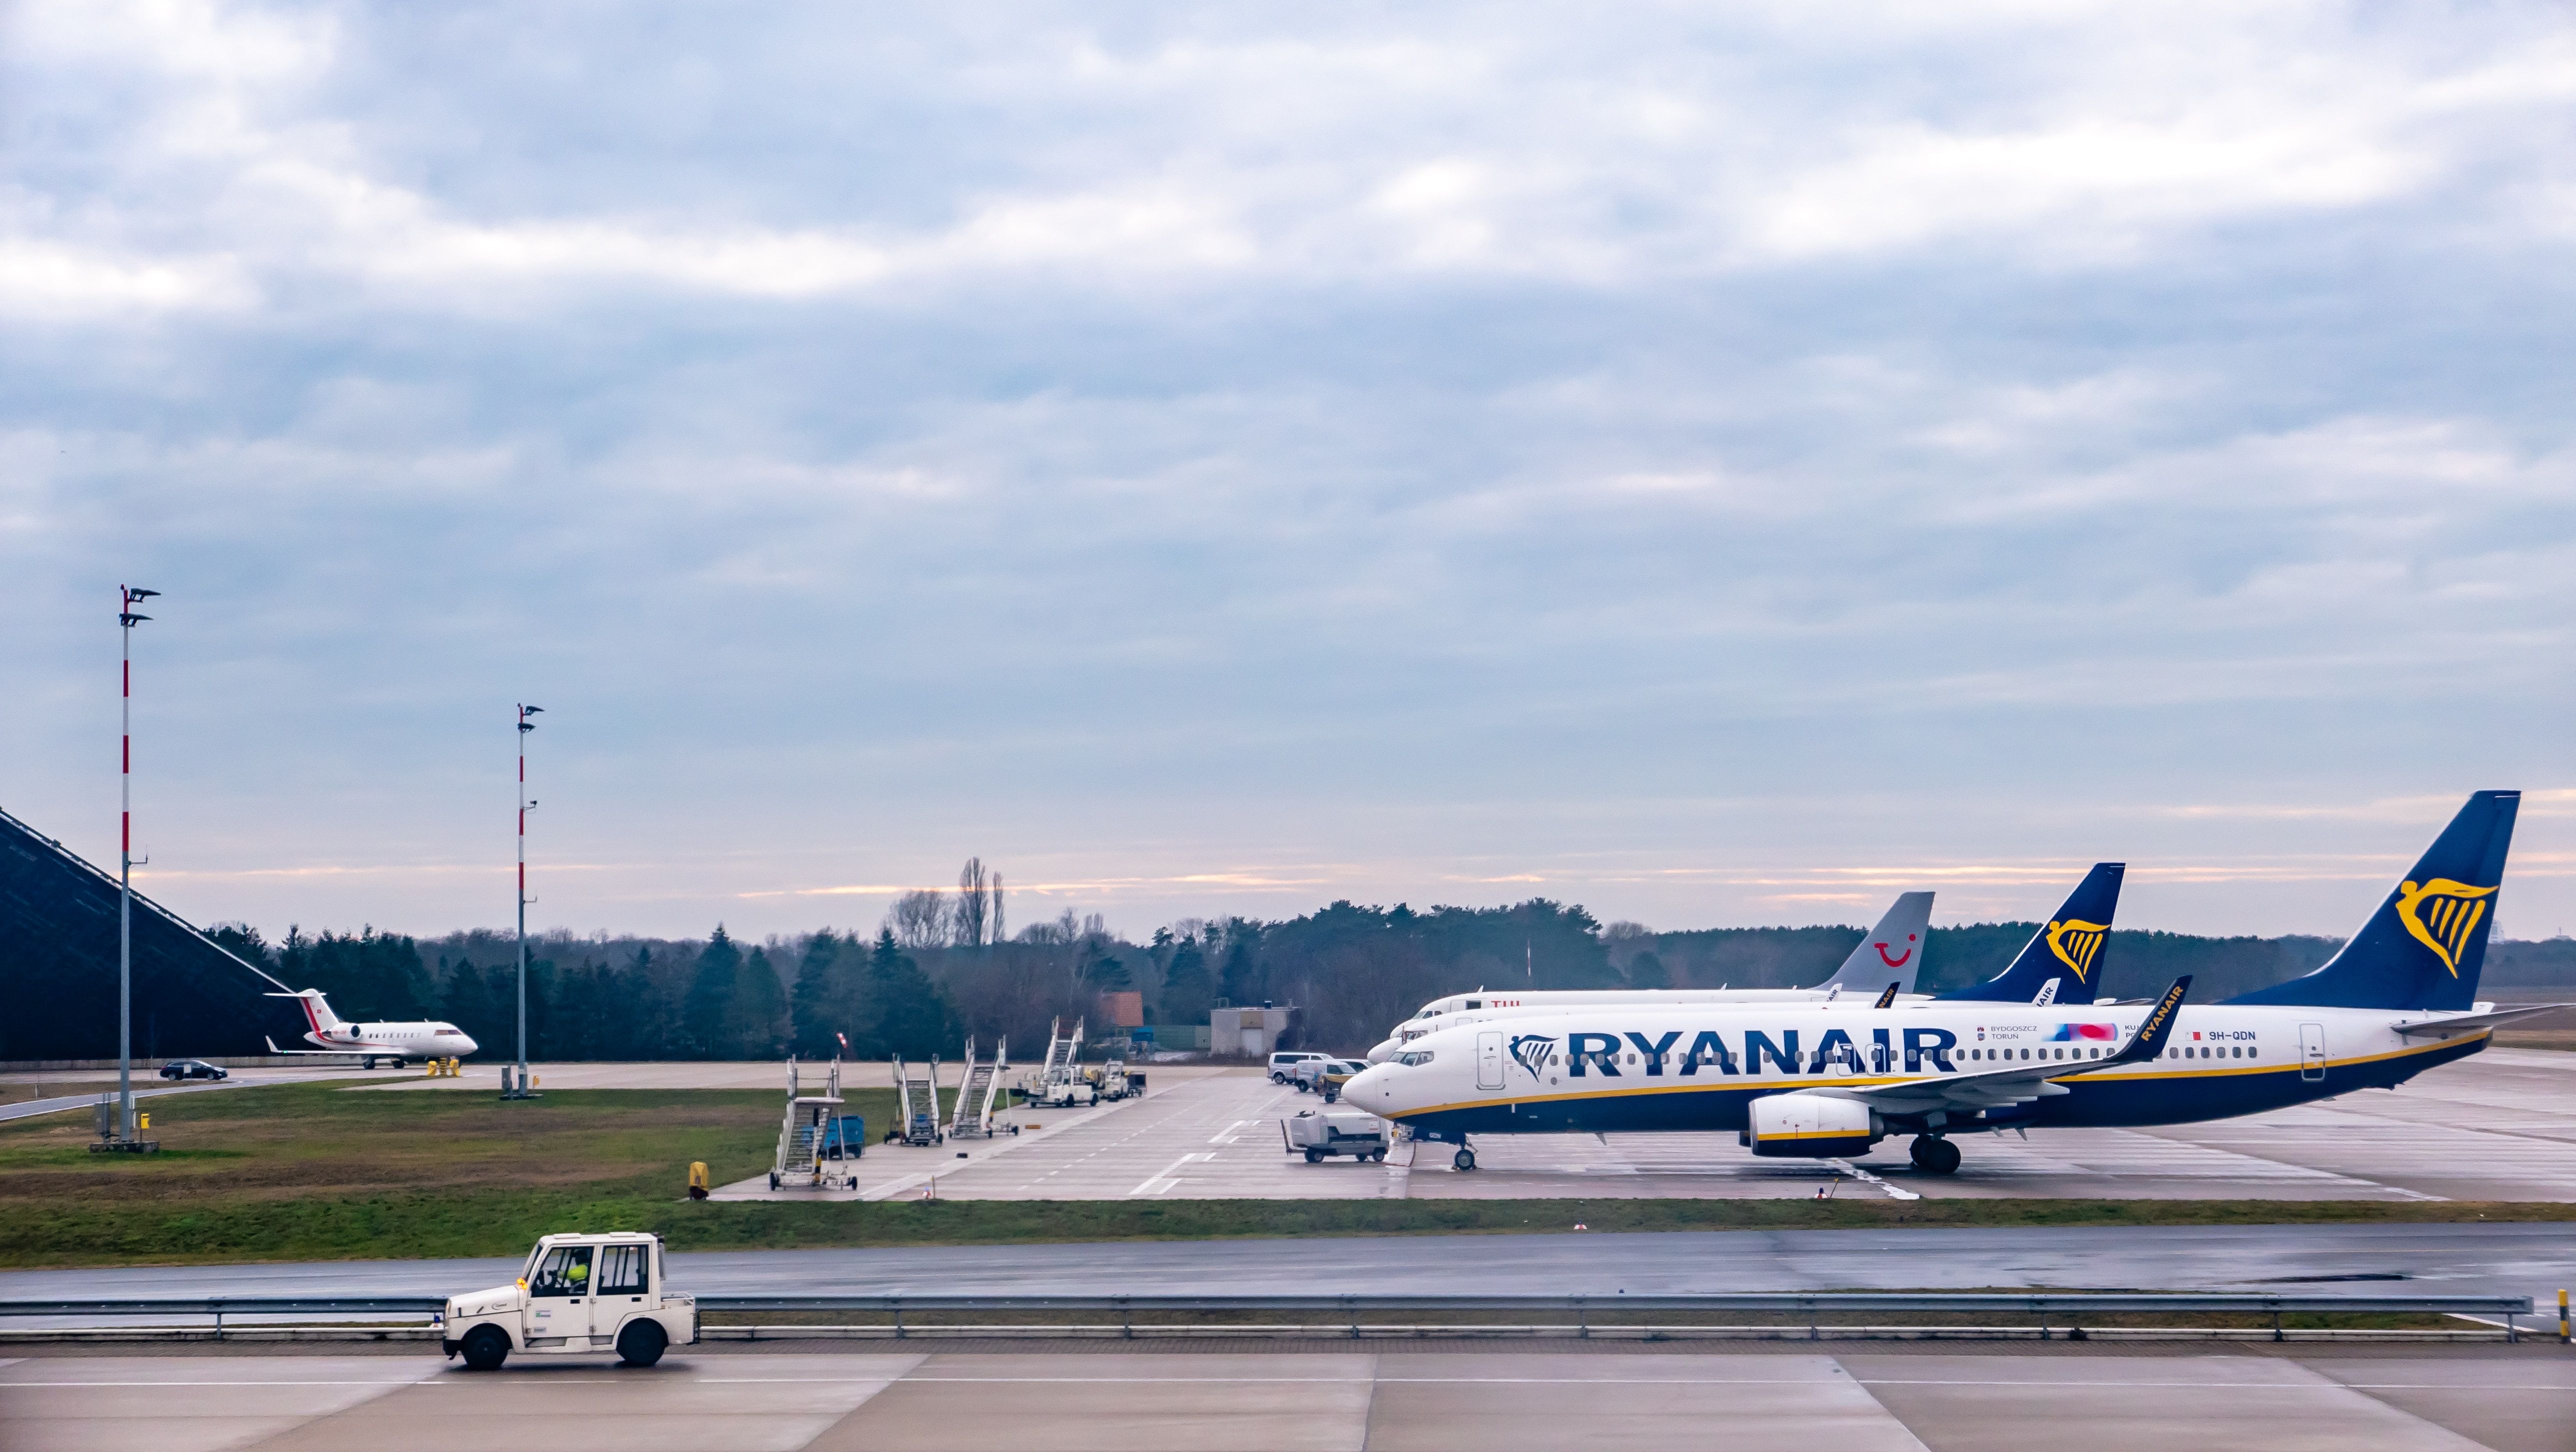 Руководителя Ryanair "поздравили" тортом в лицо во время его пикета в Бельгии: красноречивое видео